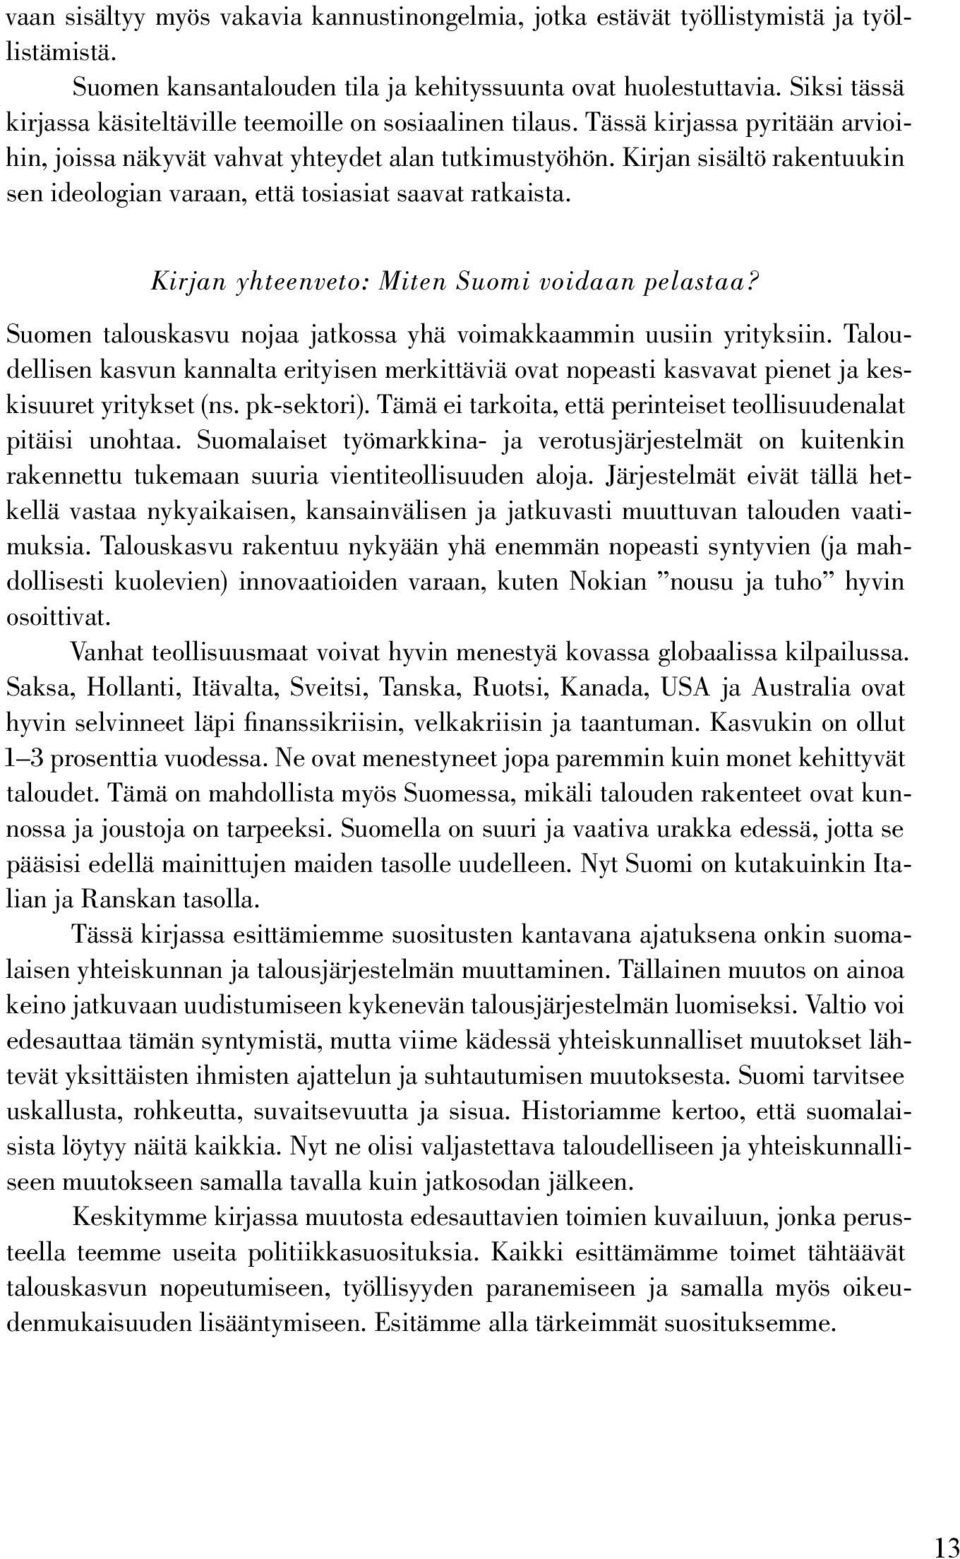 Kirjan sisältö rakentuukin sen ideologian varaan, että tosiasiat saavat ratkaista. Kirjan yhteenveto: Miten Suomi voidaan pelastaa?